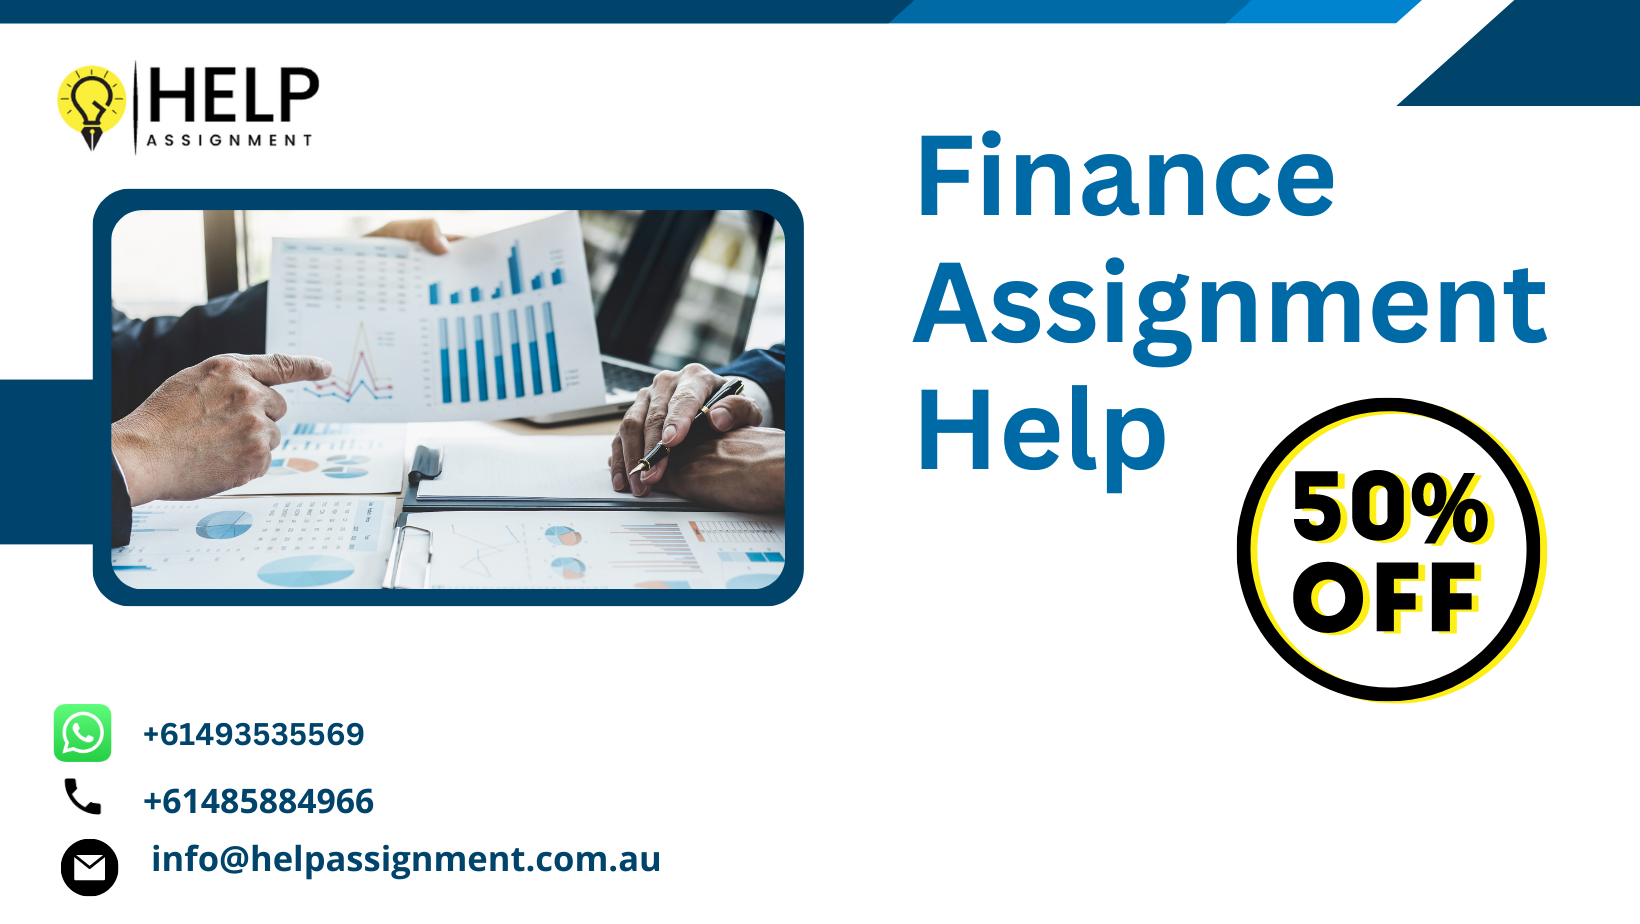 Finance Assignment Help